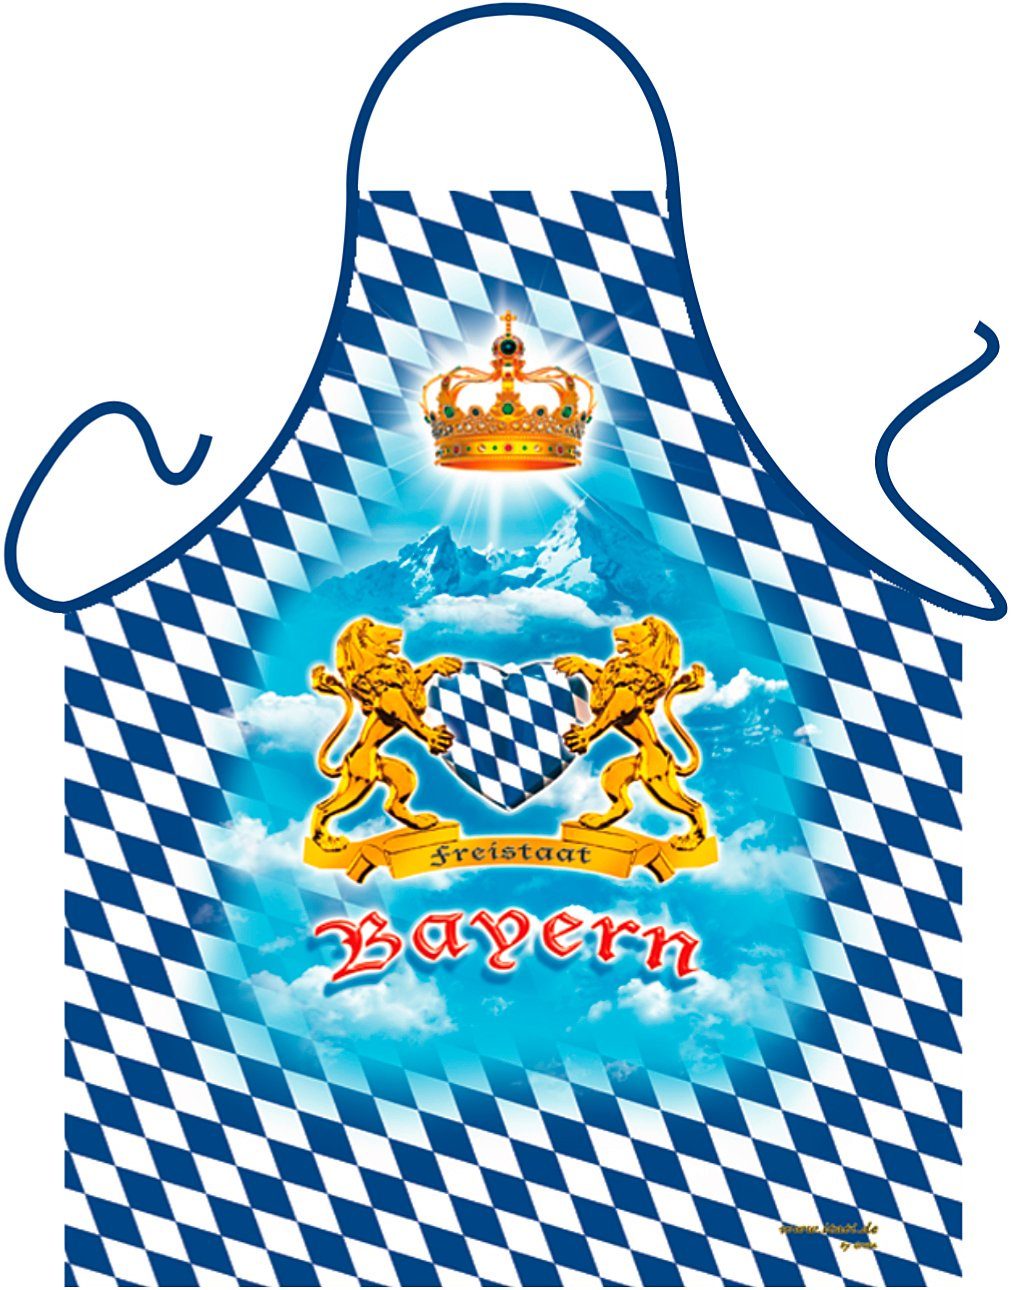 Herren Shirts ITATI T-Shirt Freistaat Bayern Grillschürze mit Herz